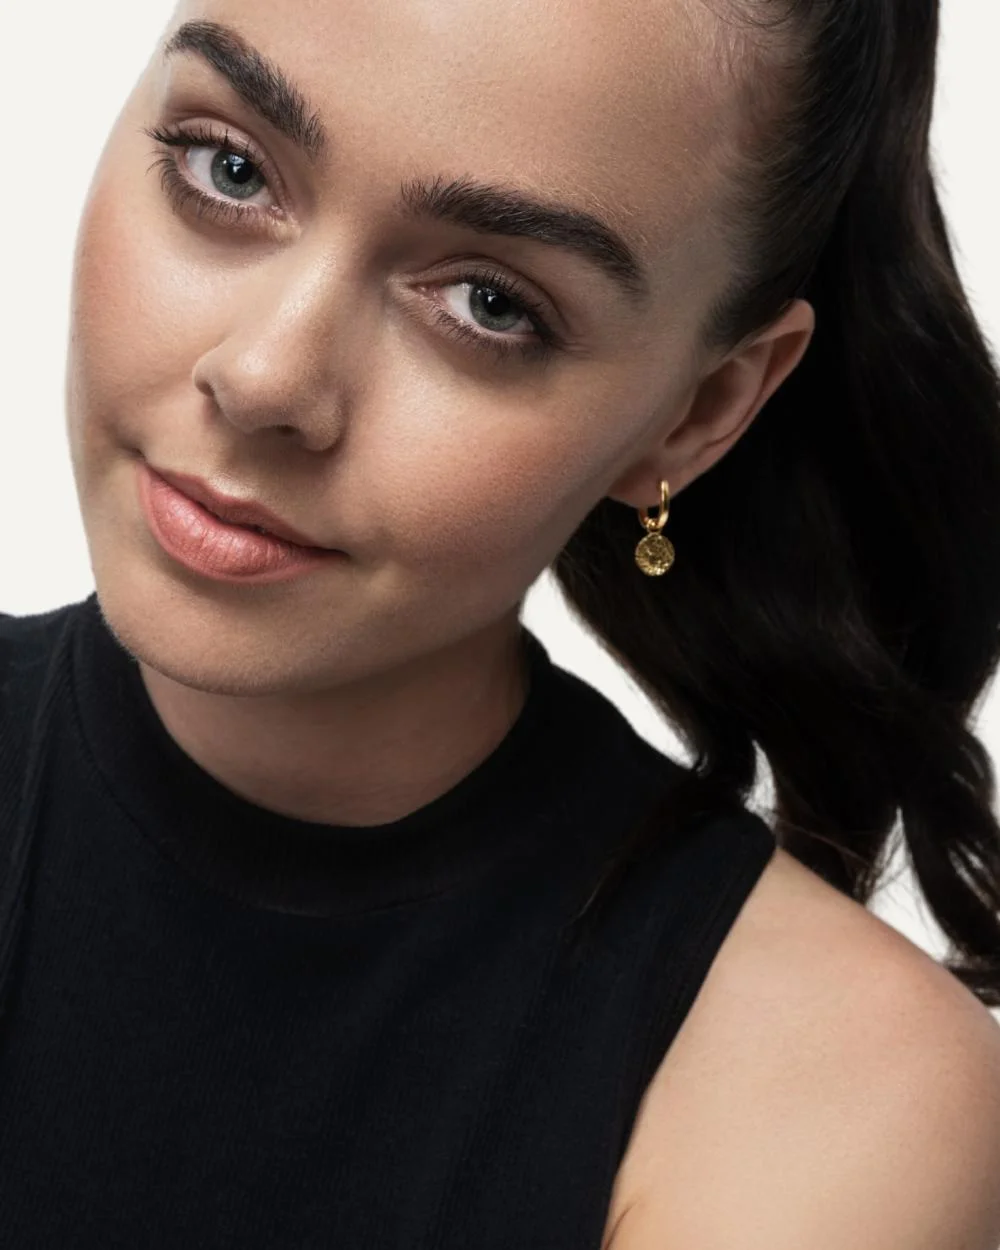 Model wearing interchangeable charm earrings, wearing black top.